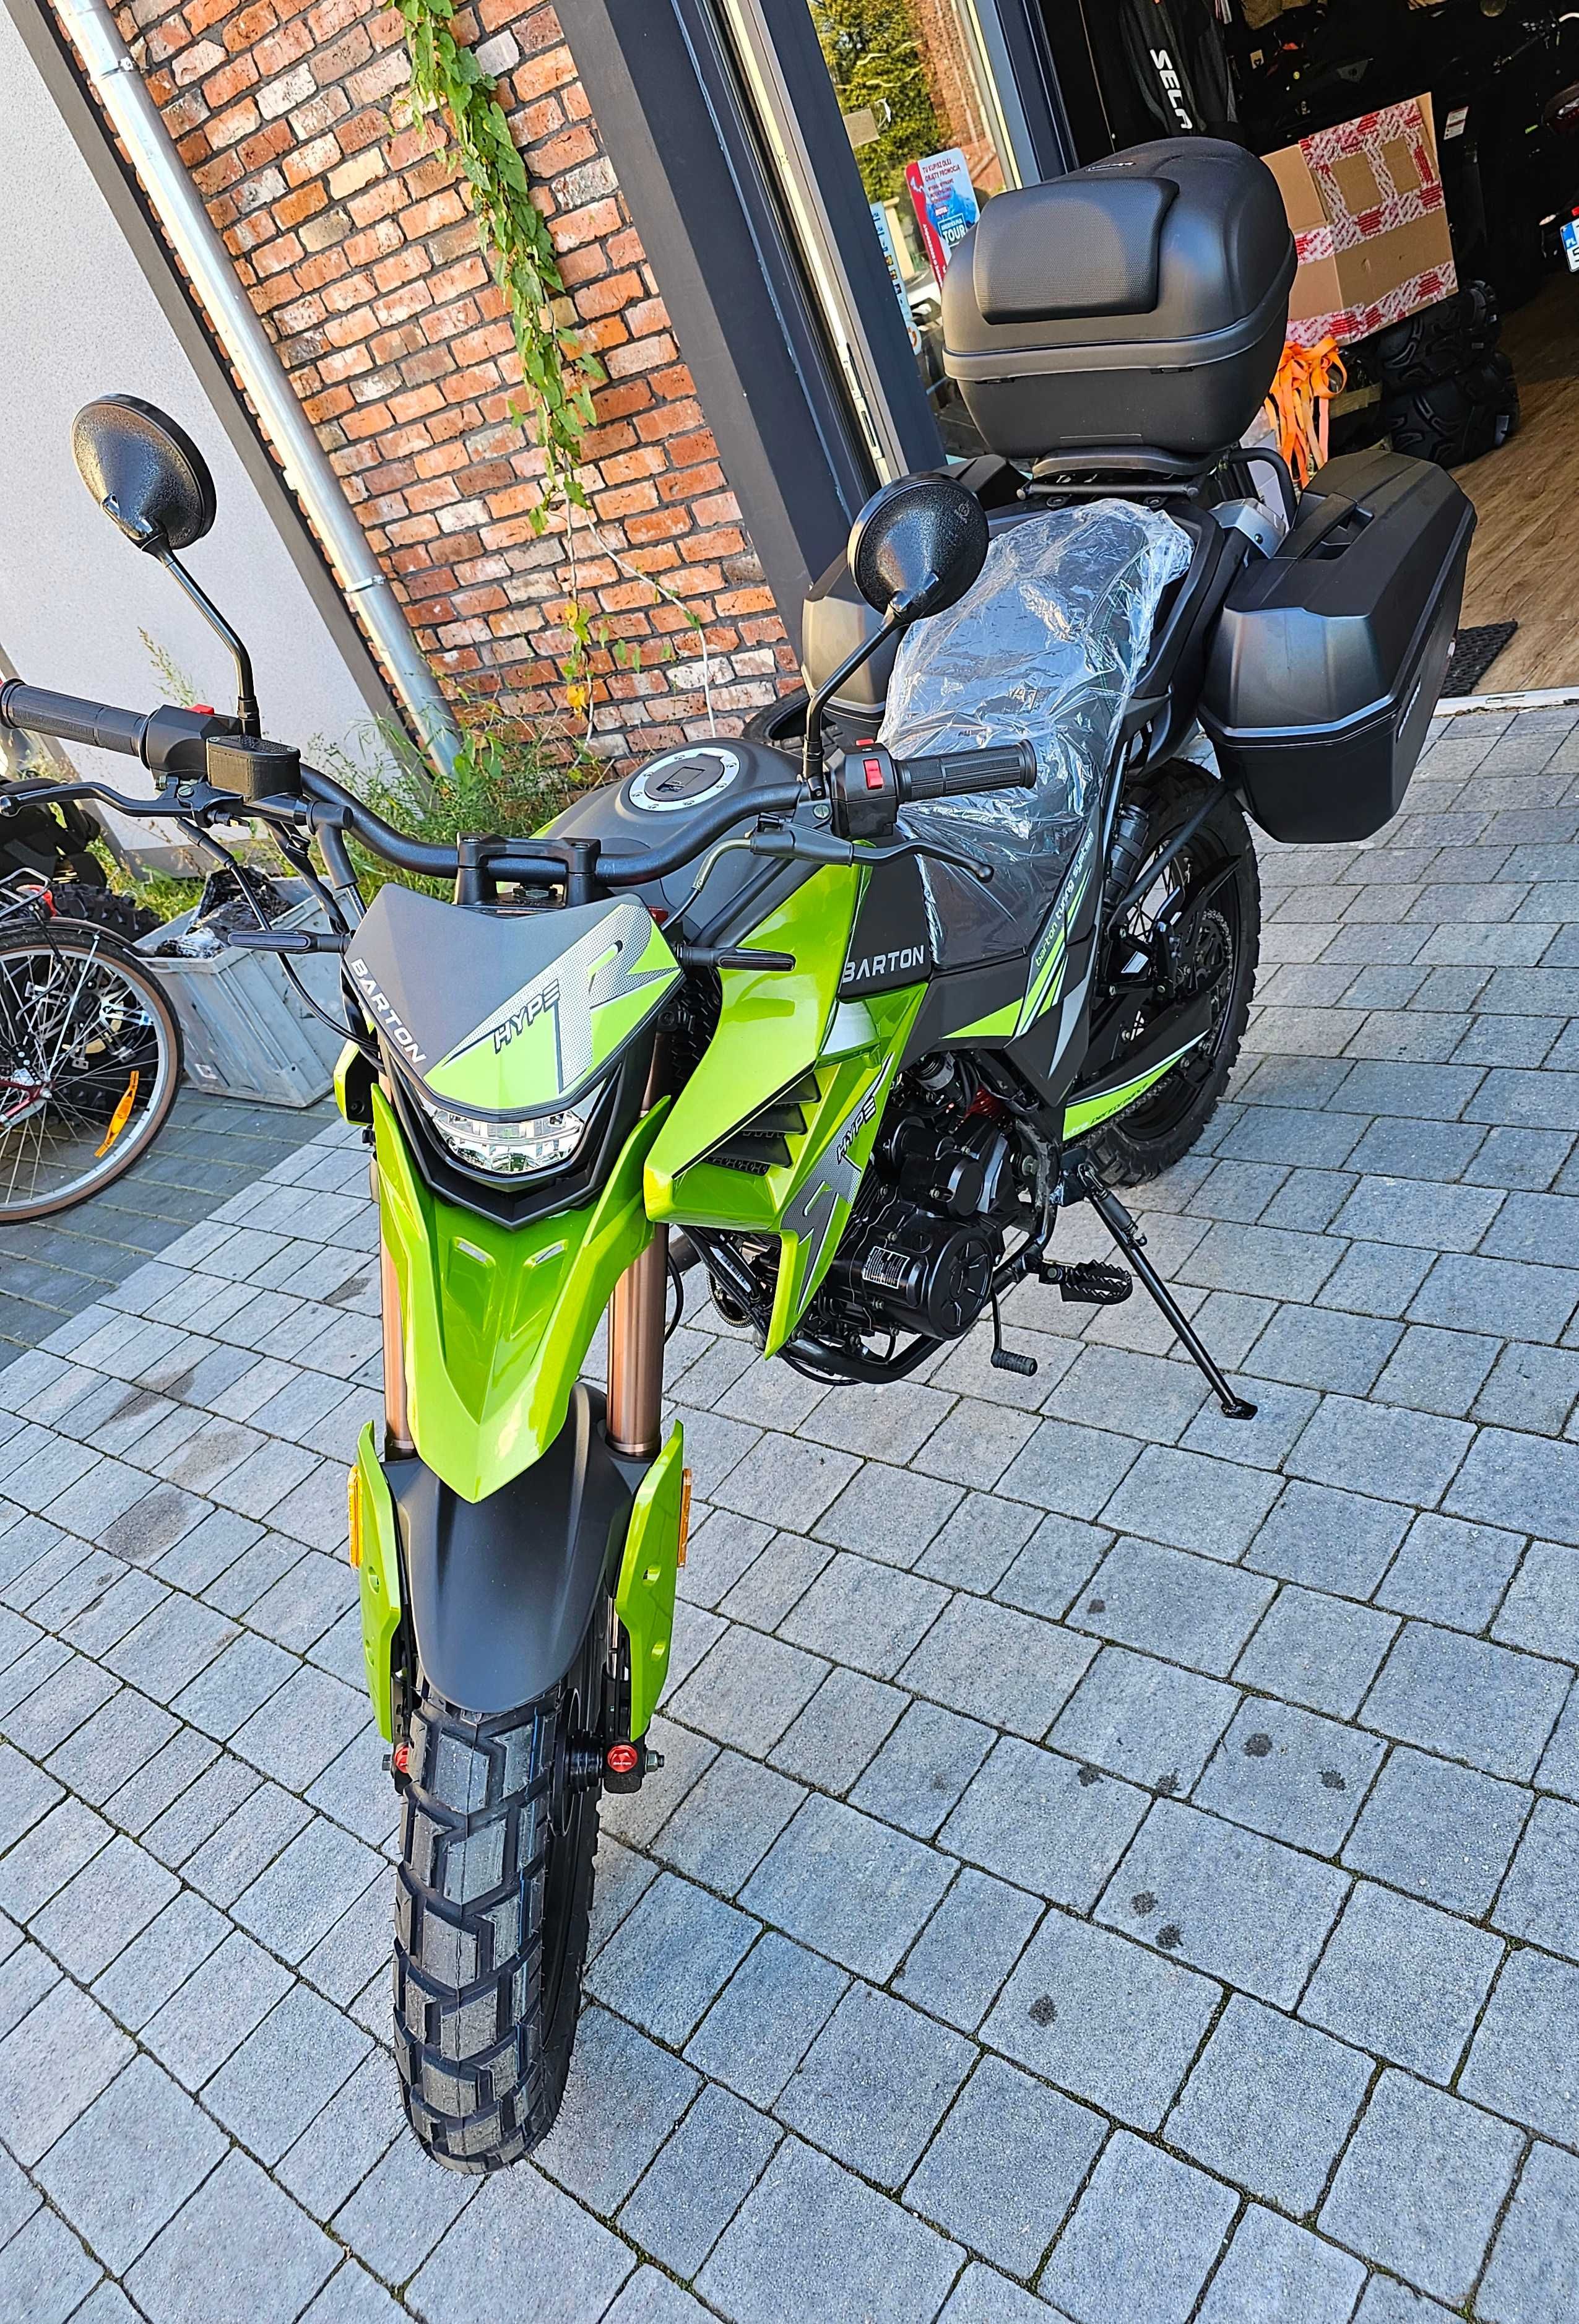 Motocykl Barton Hyper zielony 125cc z kuframi PROMOCJA